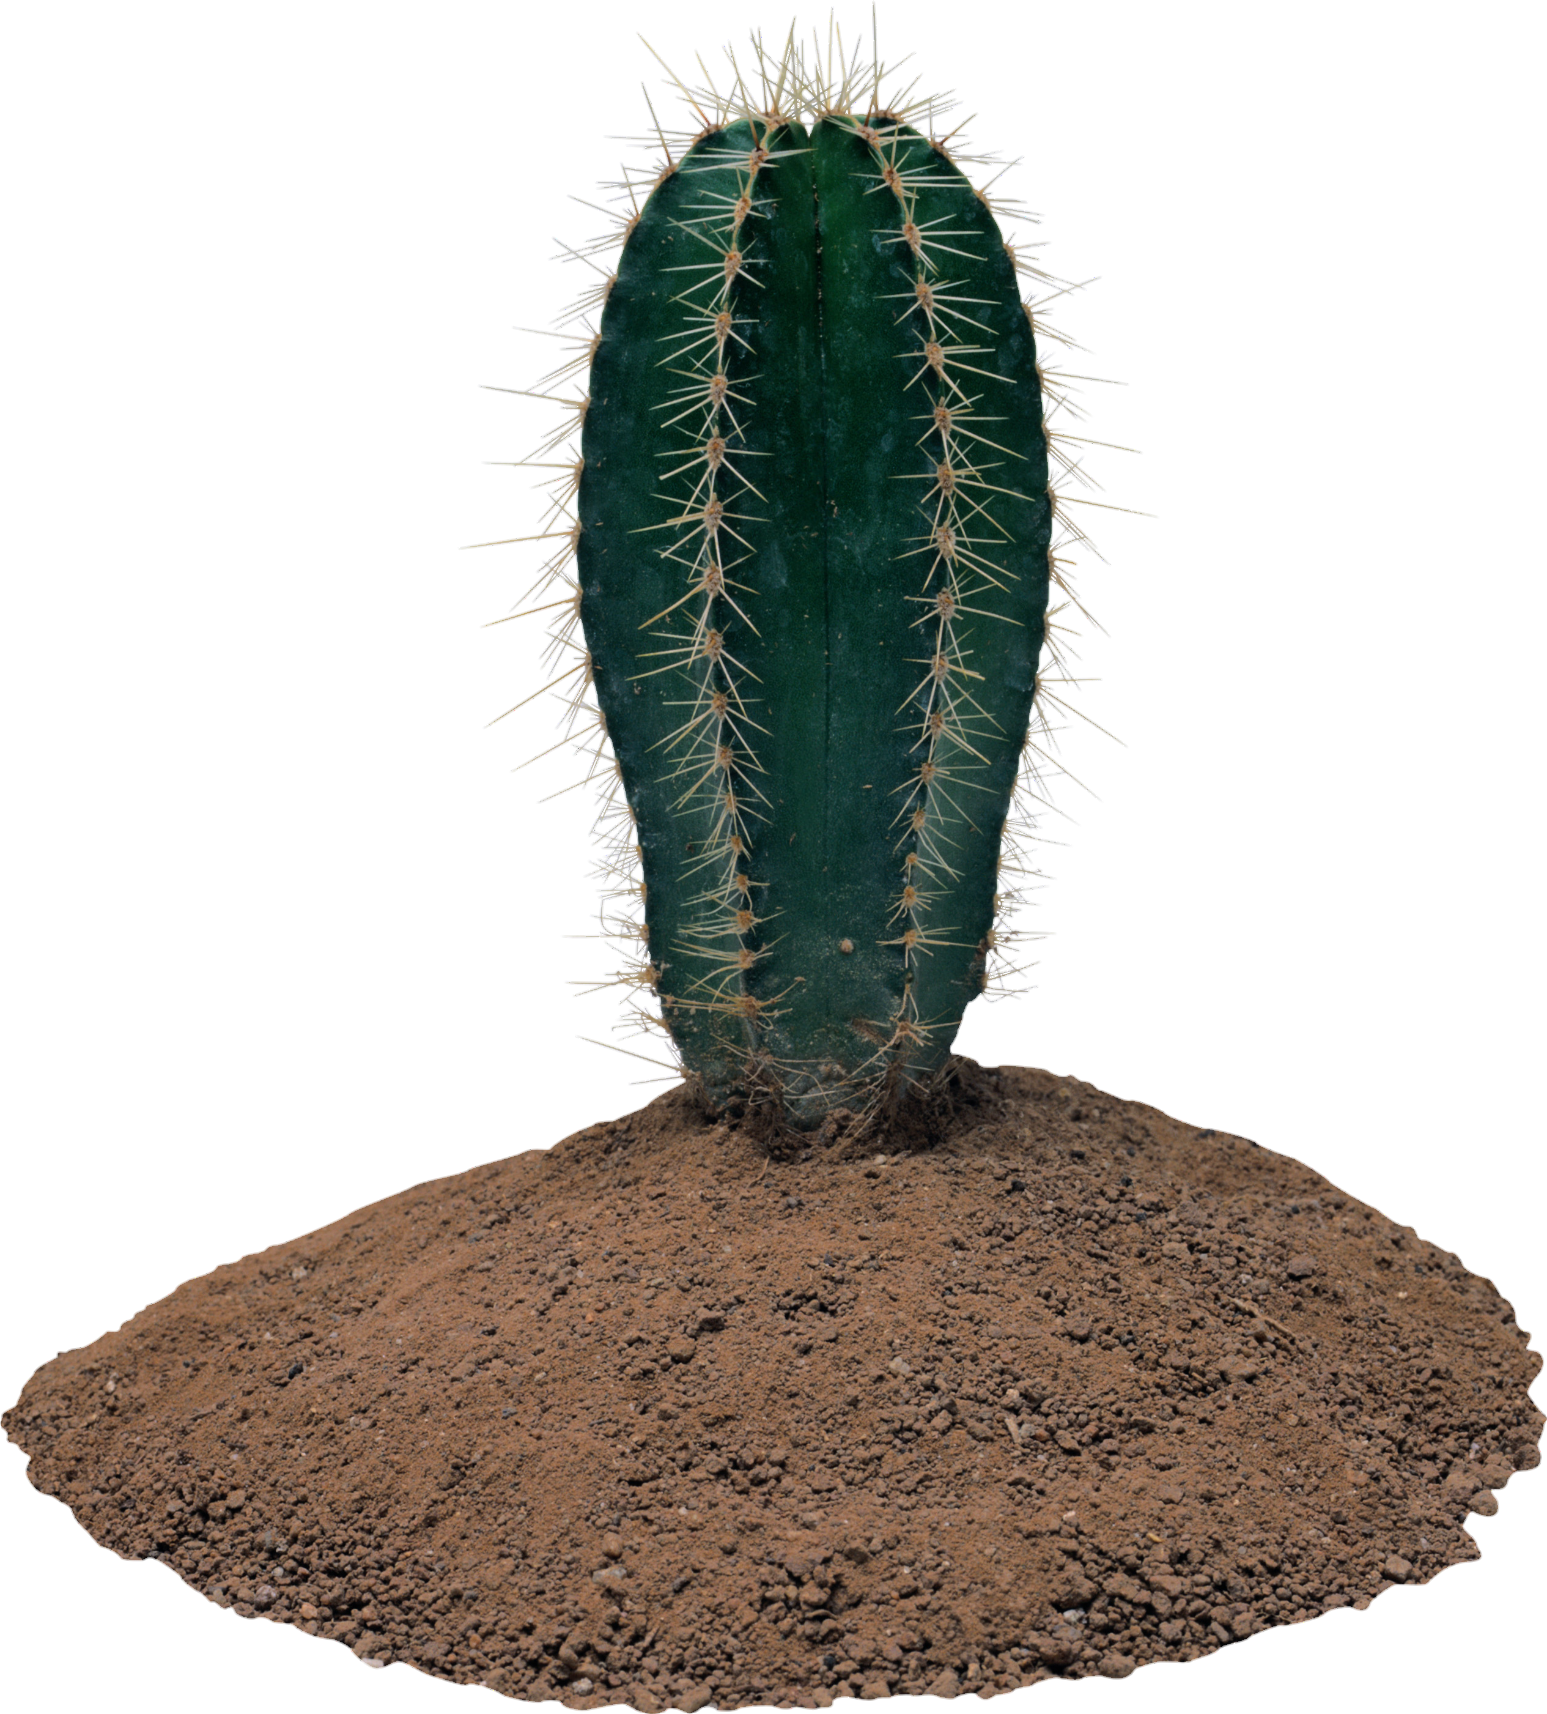 Cactus-2